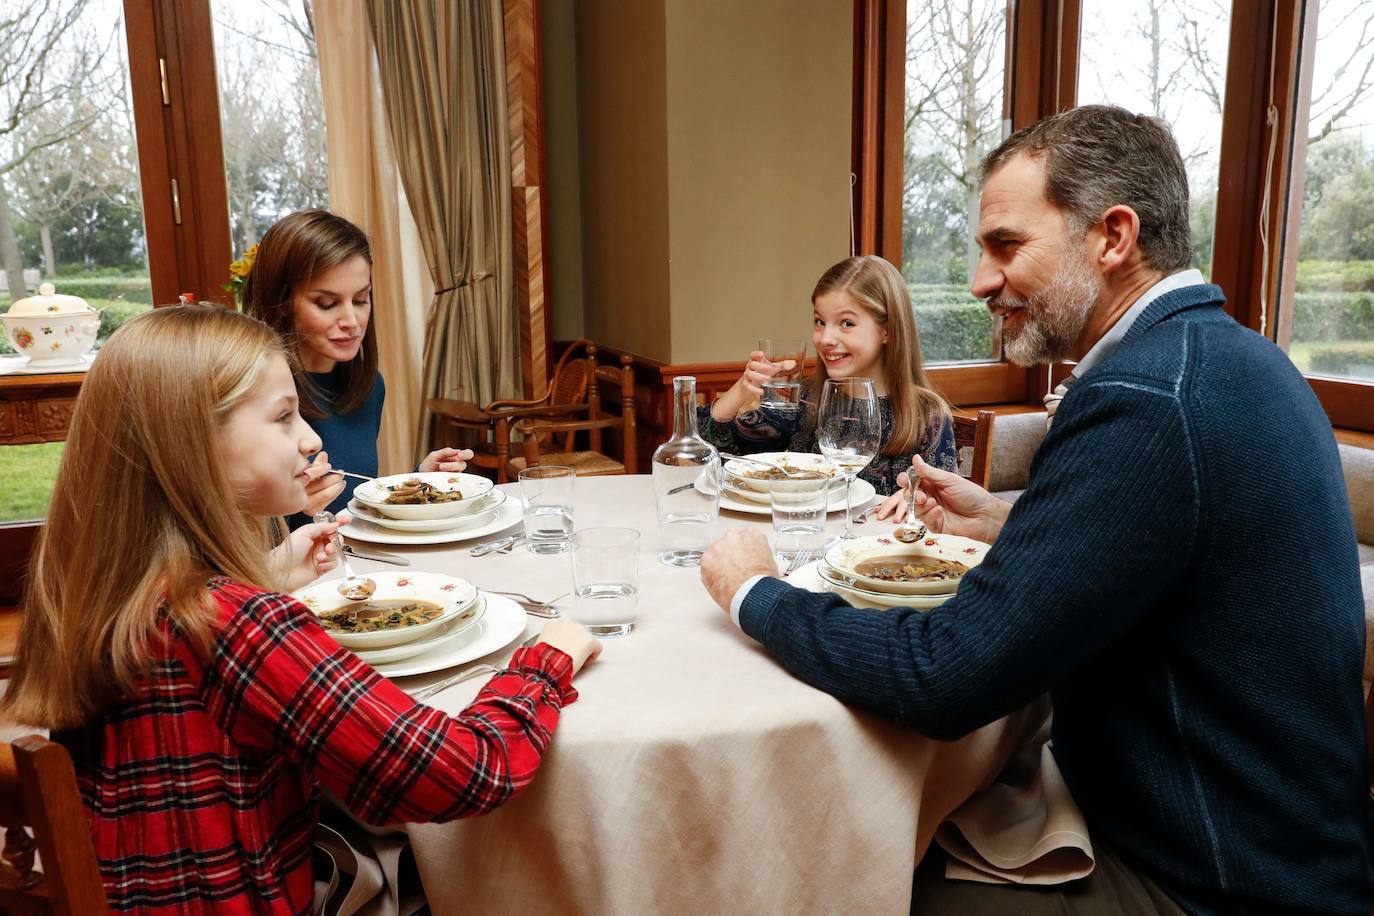 Reportaje sobre la vida diaria de la Familia Real en el Palacio de la Zarzuela, realizado entre diciembre de 2017 y enero de 2018. En la imagen, una comida durante el fin de semana.